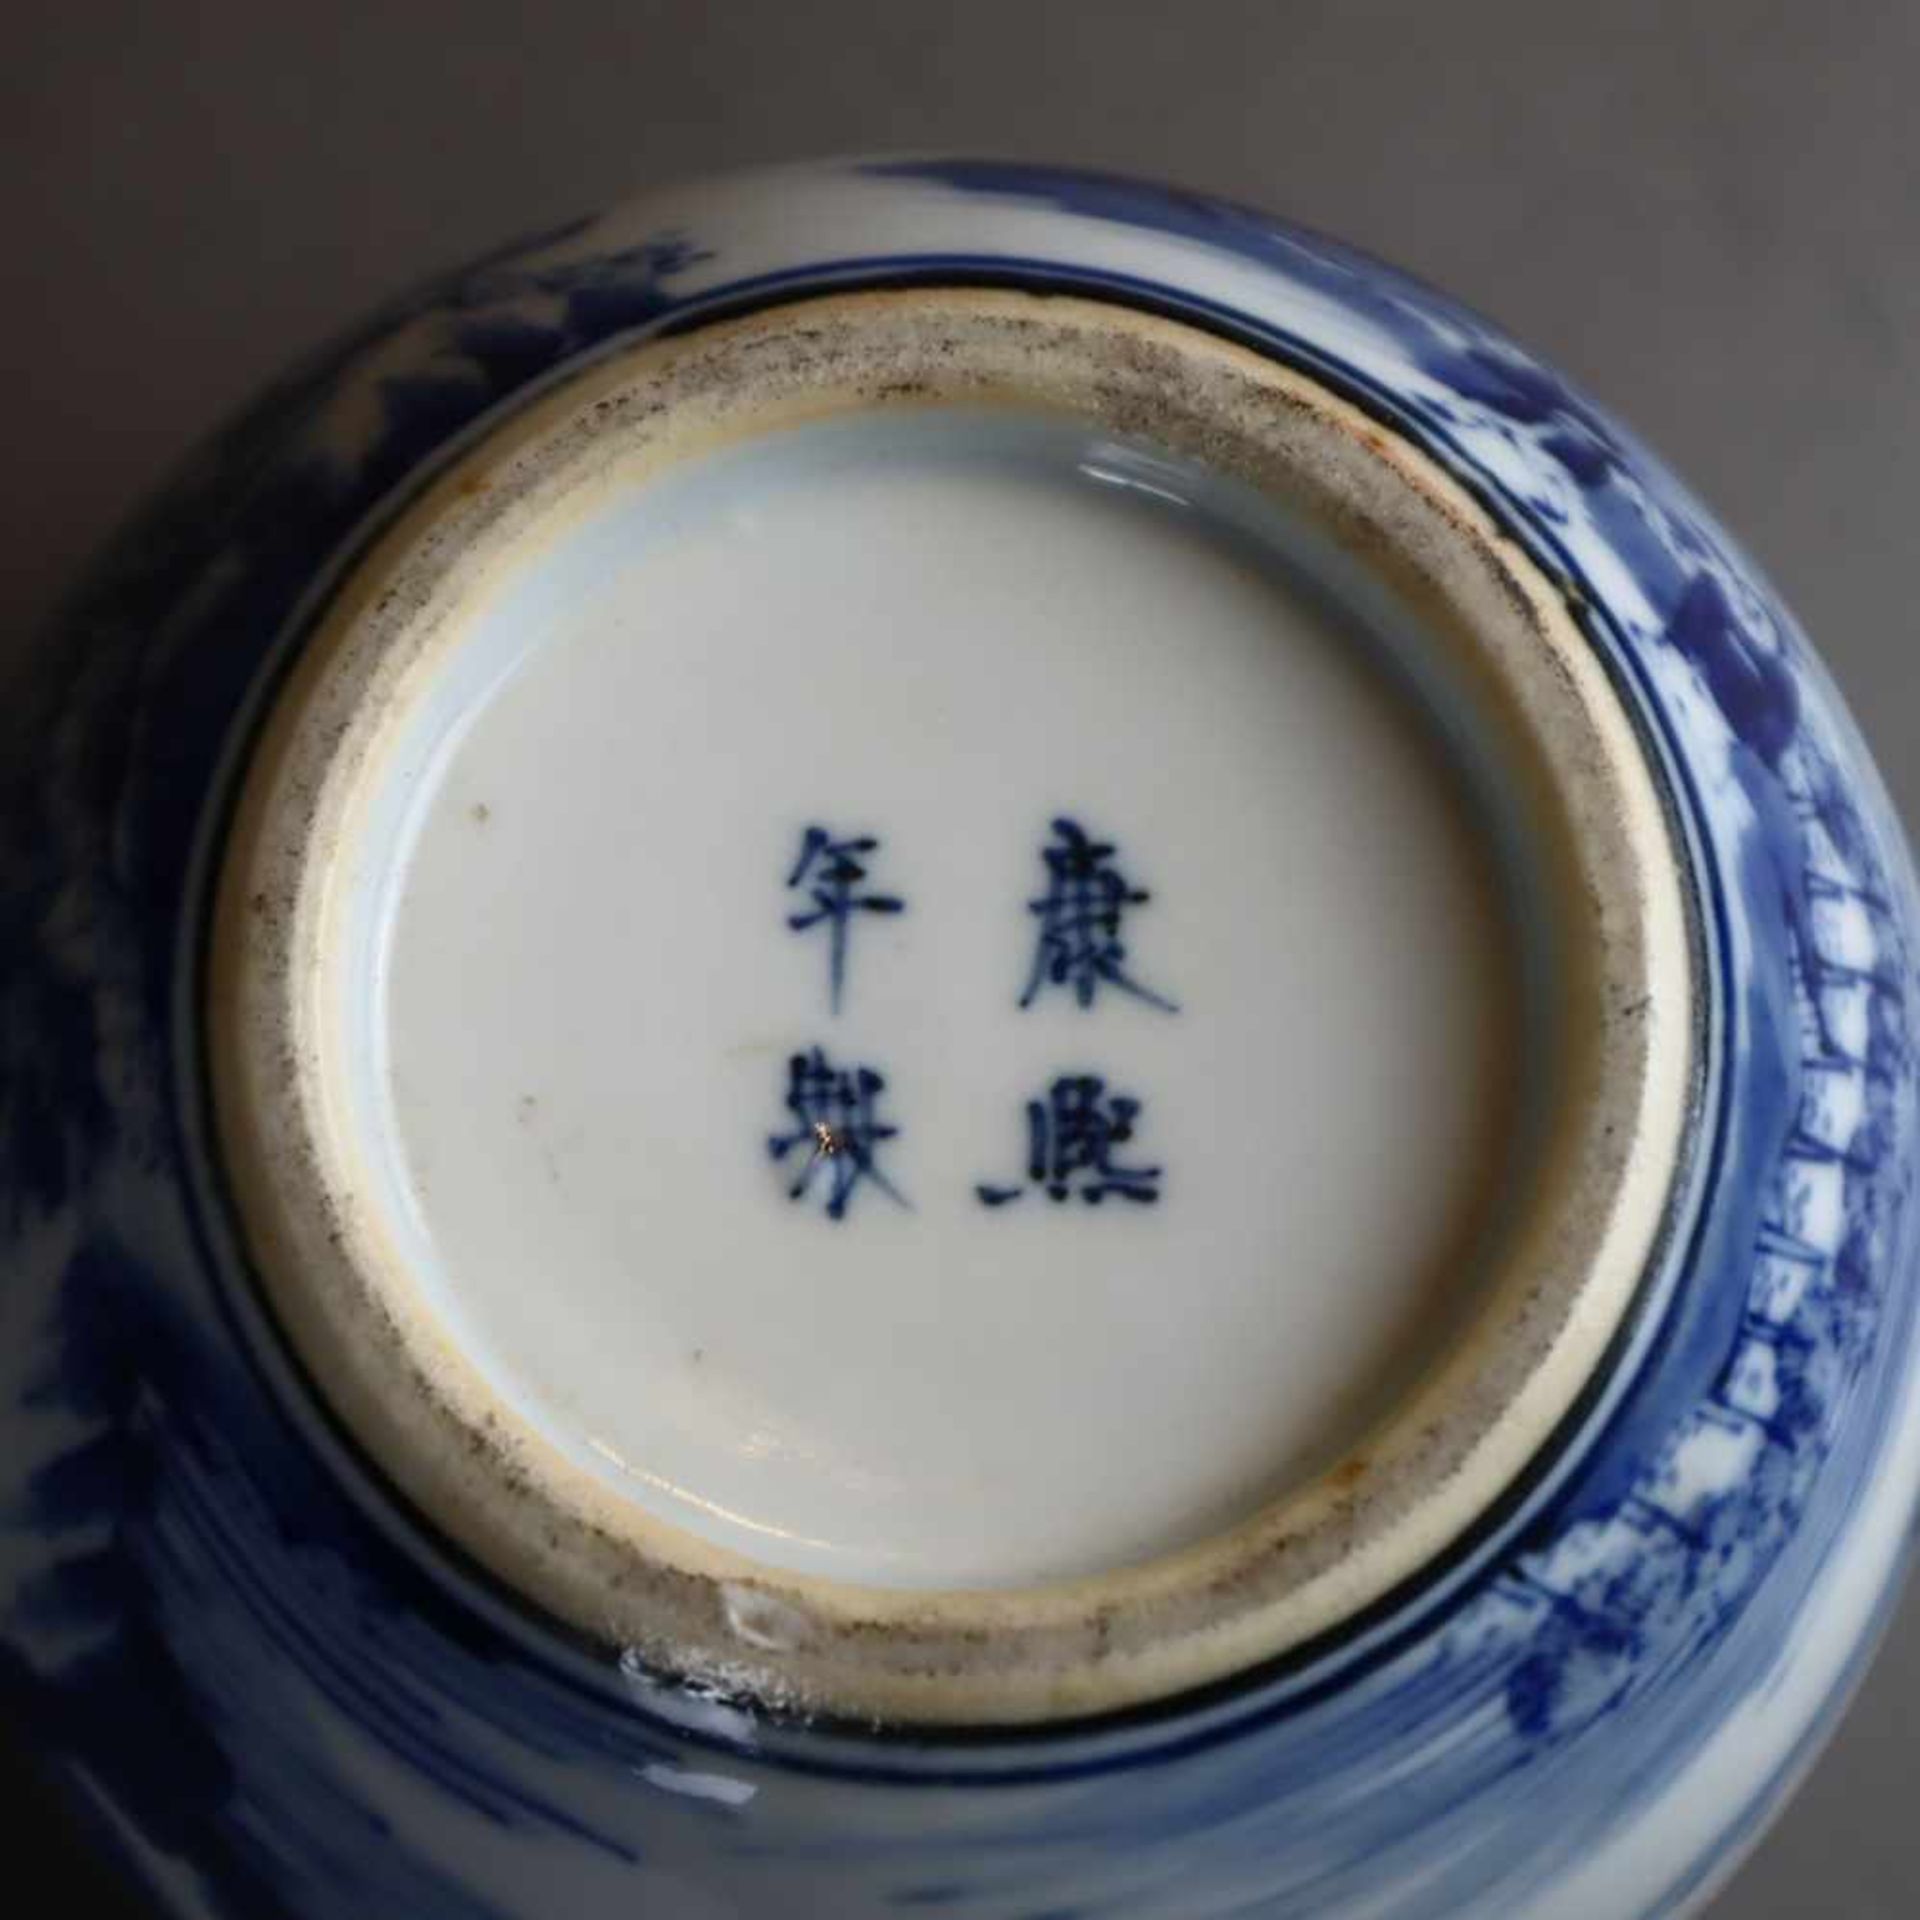 Kleiner Cachepot - China, Porzellan mit Shan-Shui-Landschaft in Unterglasurblau, eingezogene - Bild 7 aus 7